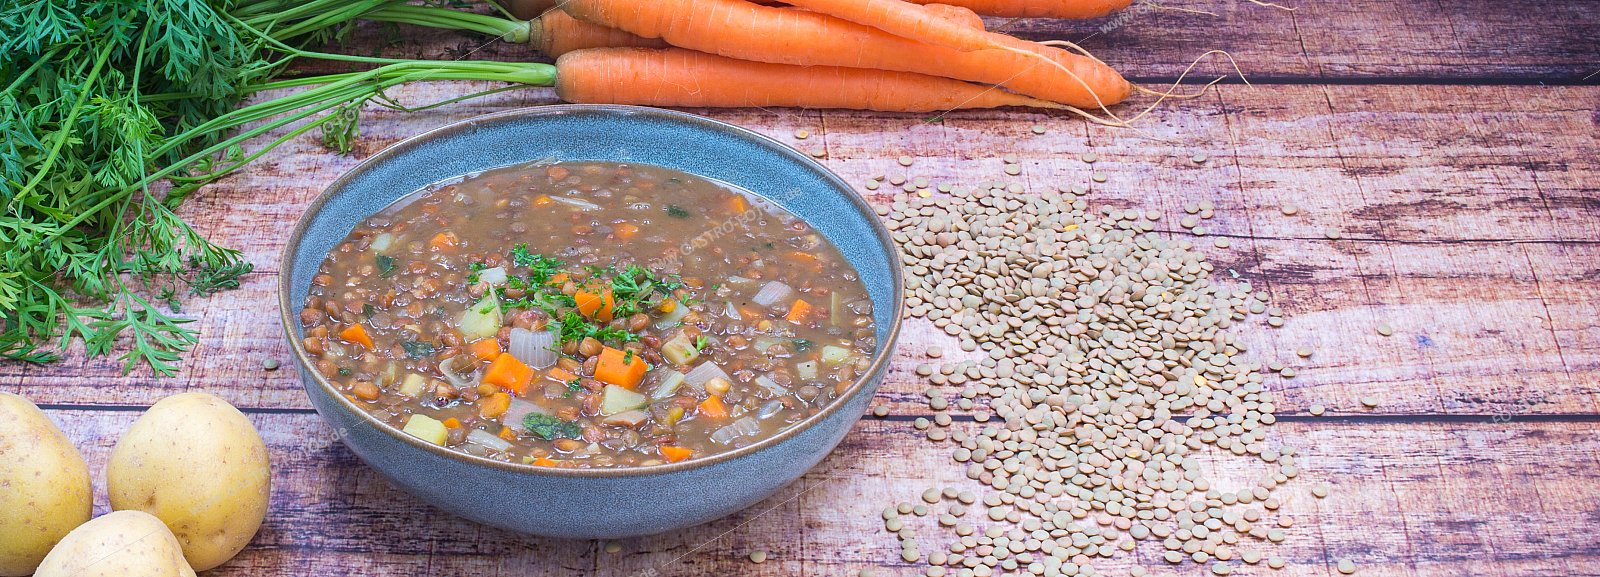 Linseneintopf - Suppen & Eintöpfe mit Gemüseeinlage